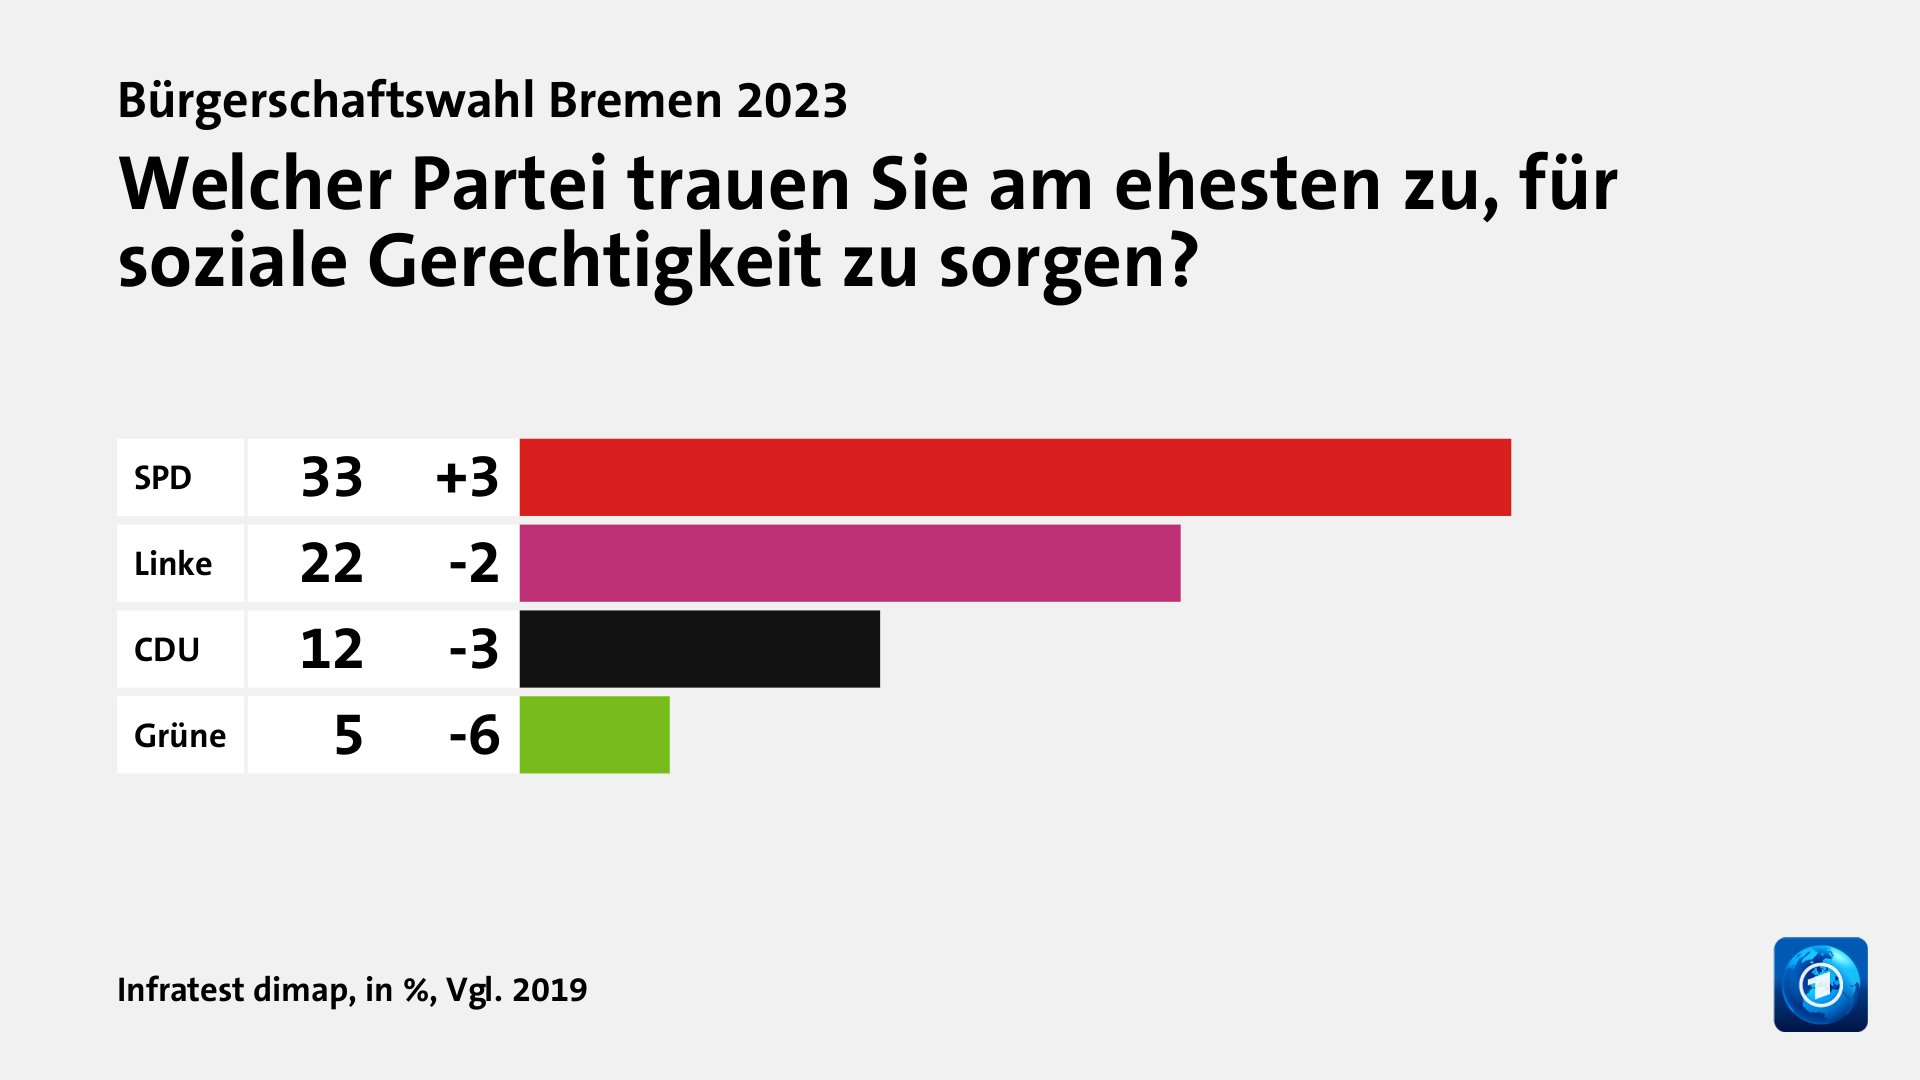 Welcher Partei trauen Sie am ehesten zu, für soziale Gerechtigkeit zu sorgen?, in %, Vgl. 2019: SPD 33, Linke 22, CDU 12, Grüne 5, Quelle: Infratest dimap